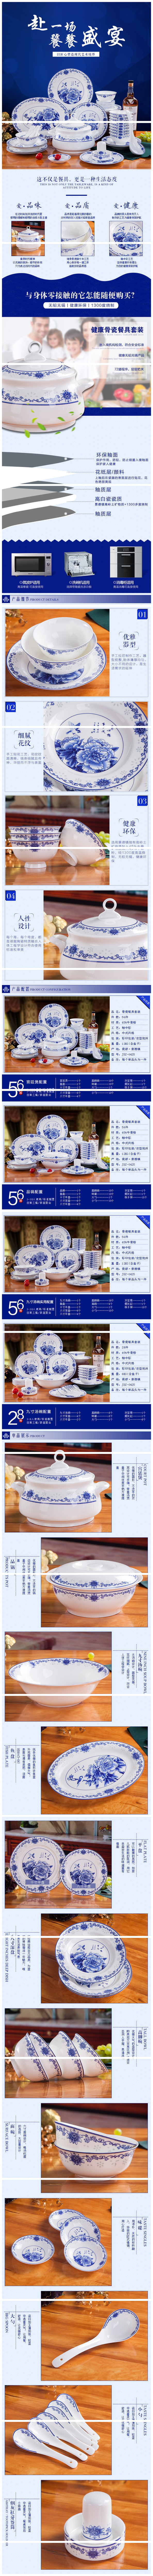 骨瓷餐具  景德镇青花骨瓷碗碟套装 骨瓷餐具56件套装